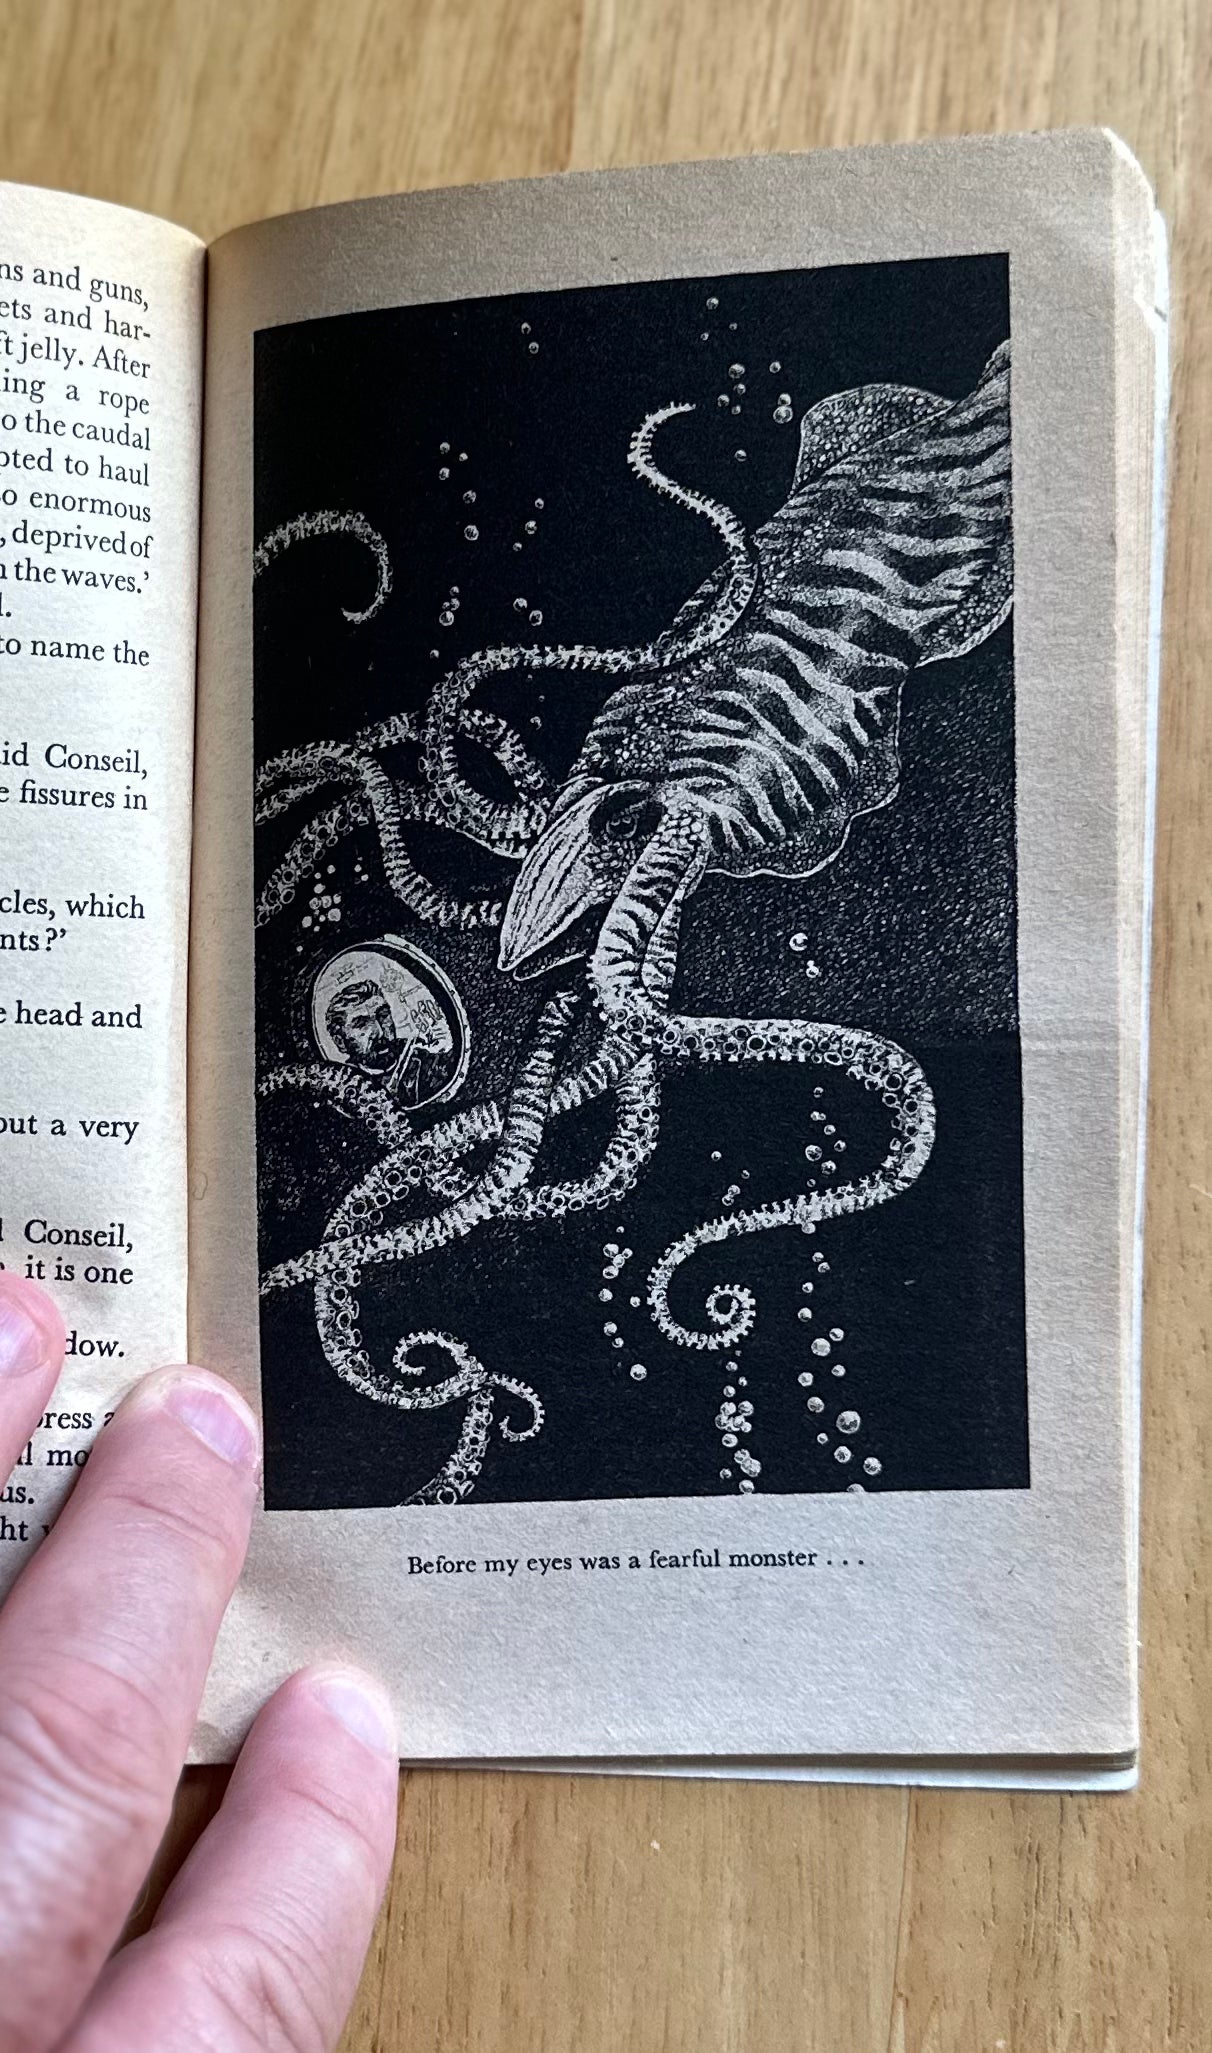 1976 The Creepy Crawly Book – Lucy Berman, veröffentlicht von Target